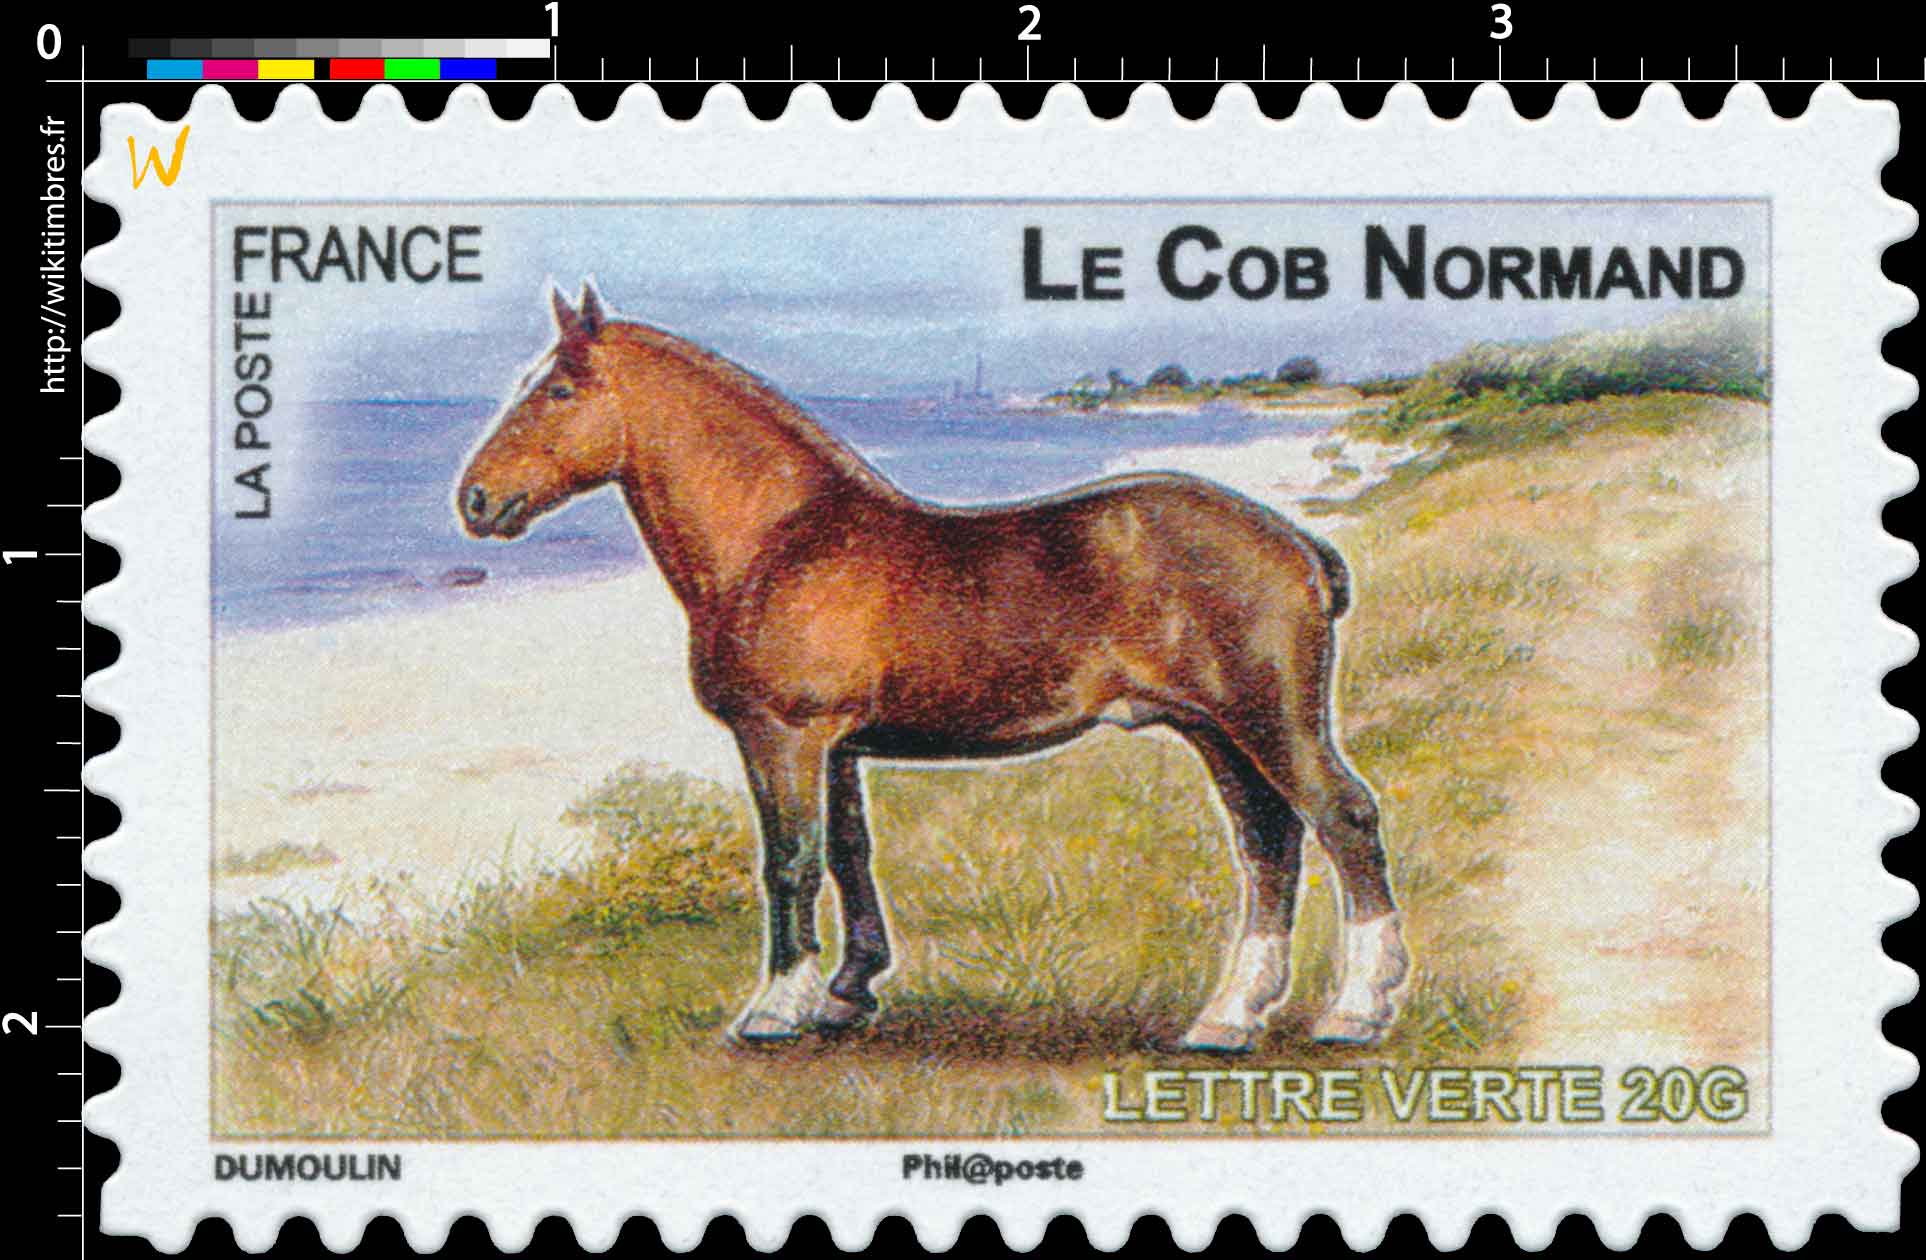 Le Cob Normand